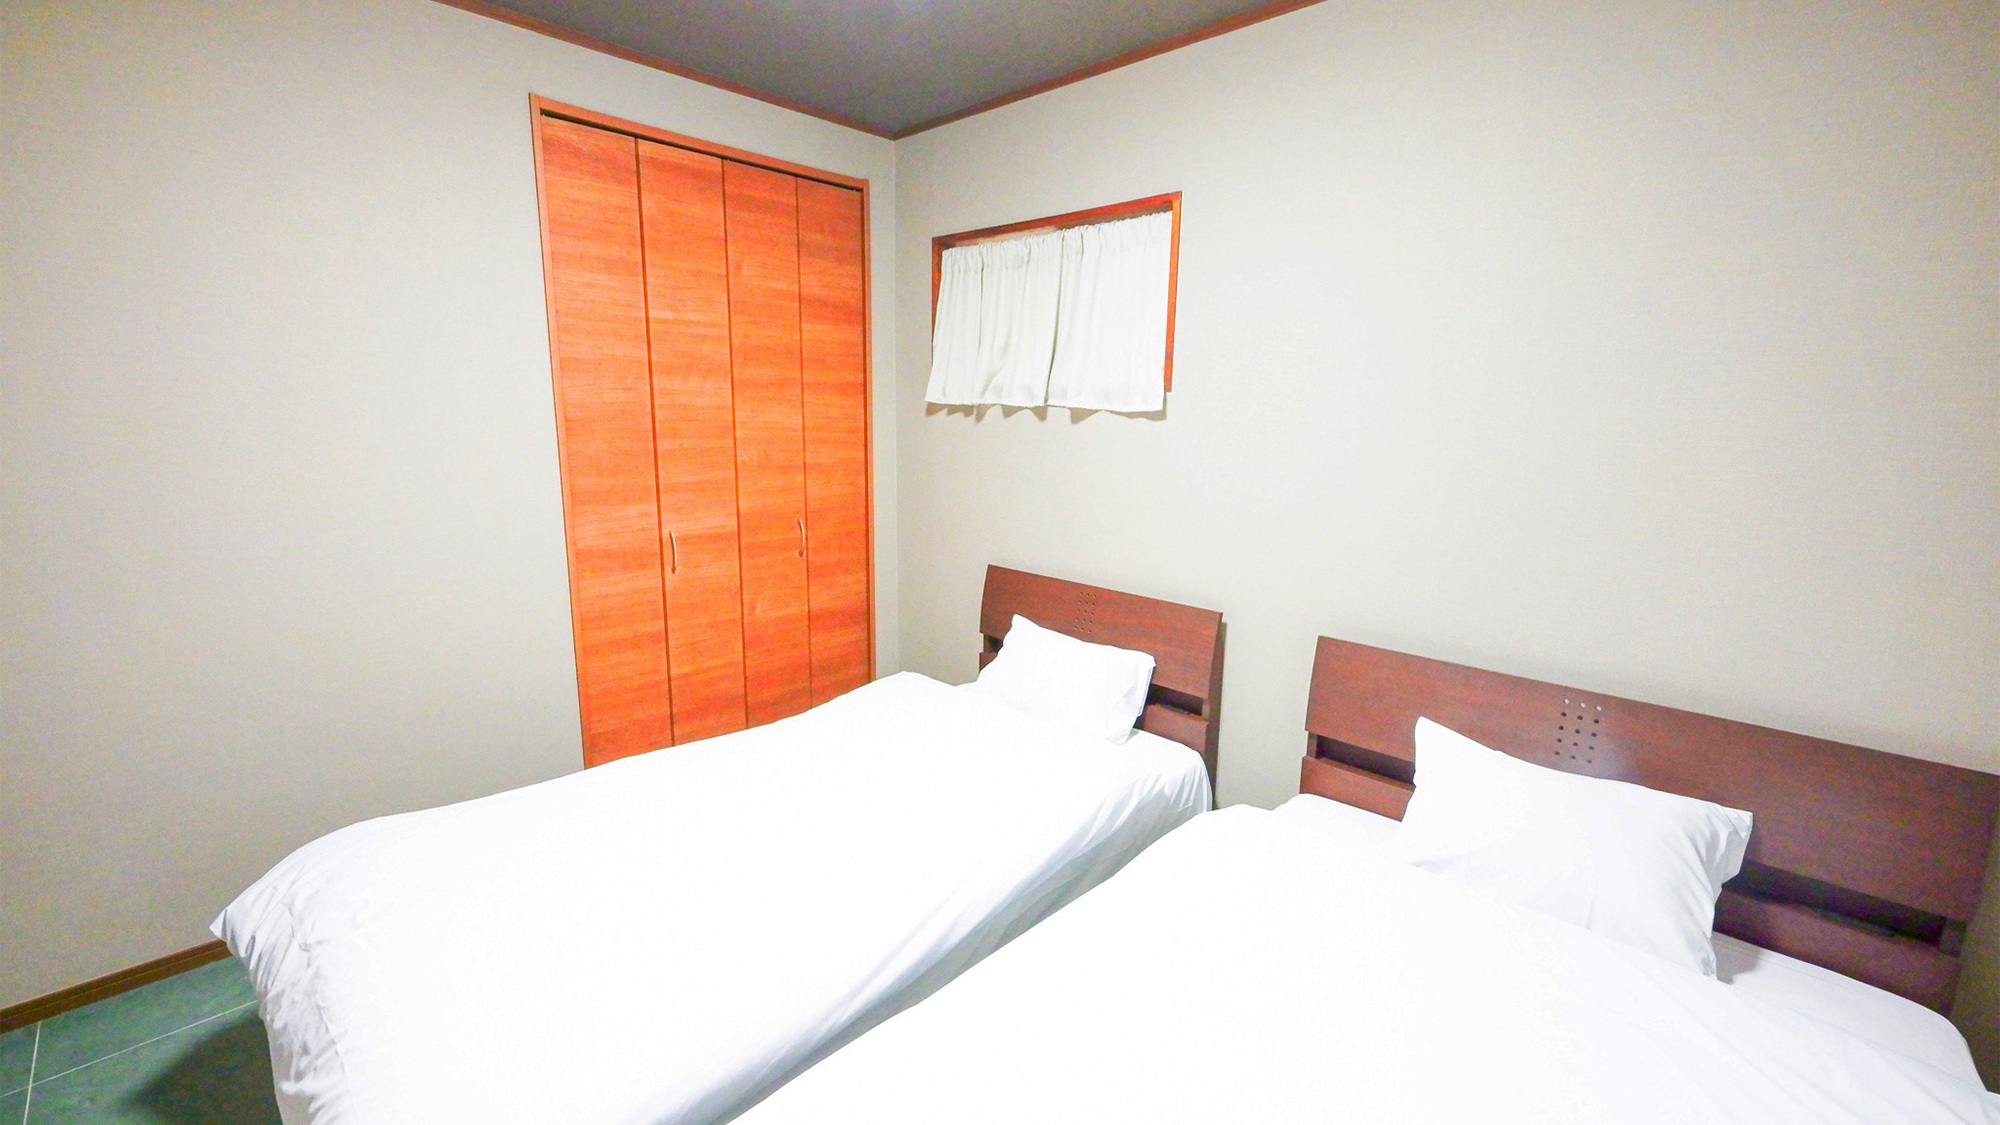 ・【A棟・寝室】ダブルベッド1台、シングルベッド1台を設置した部屋